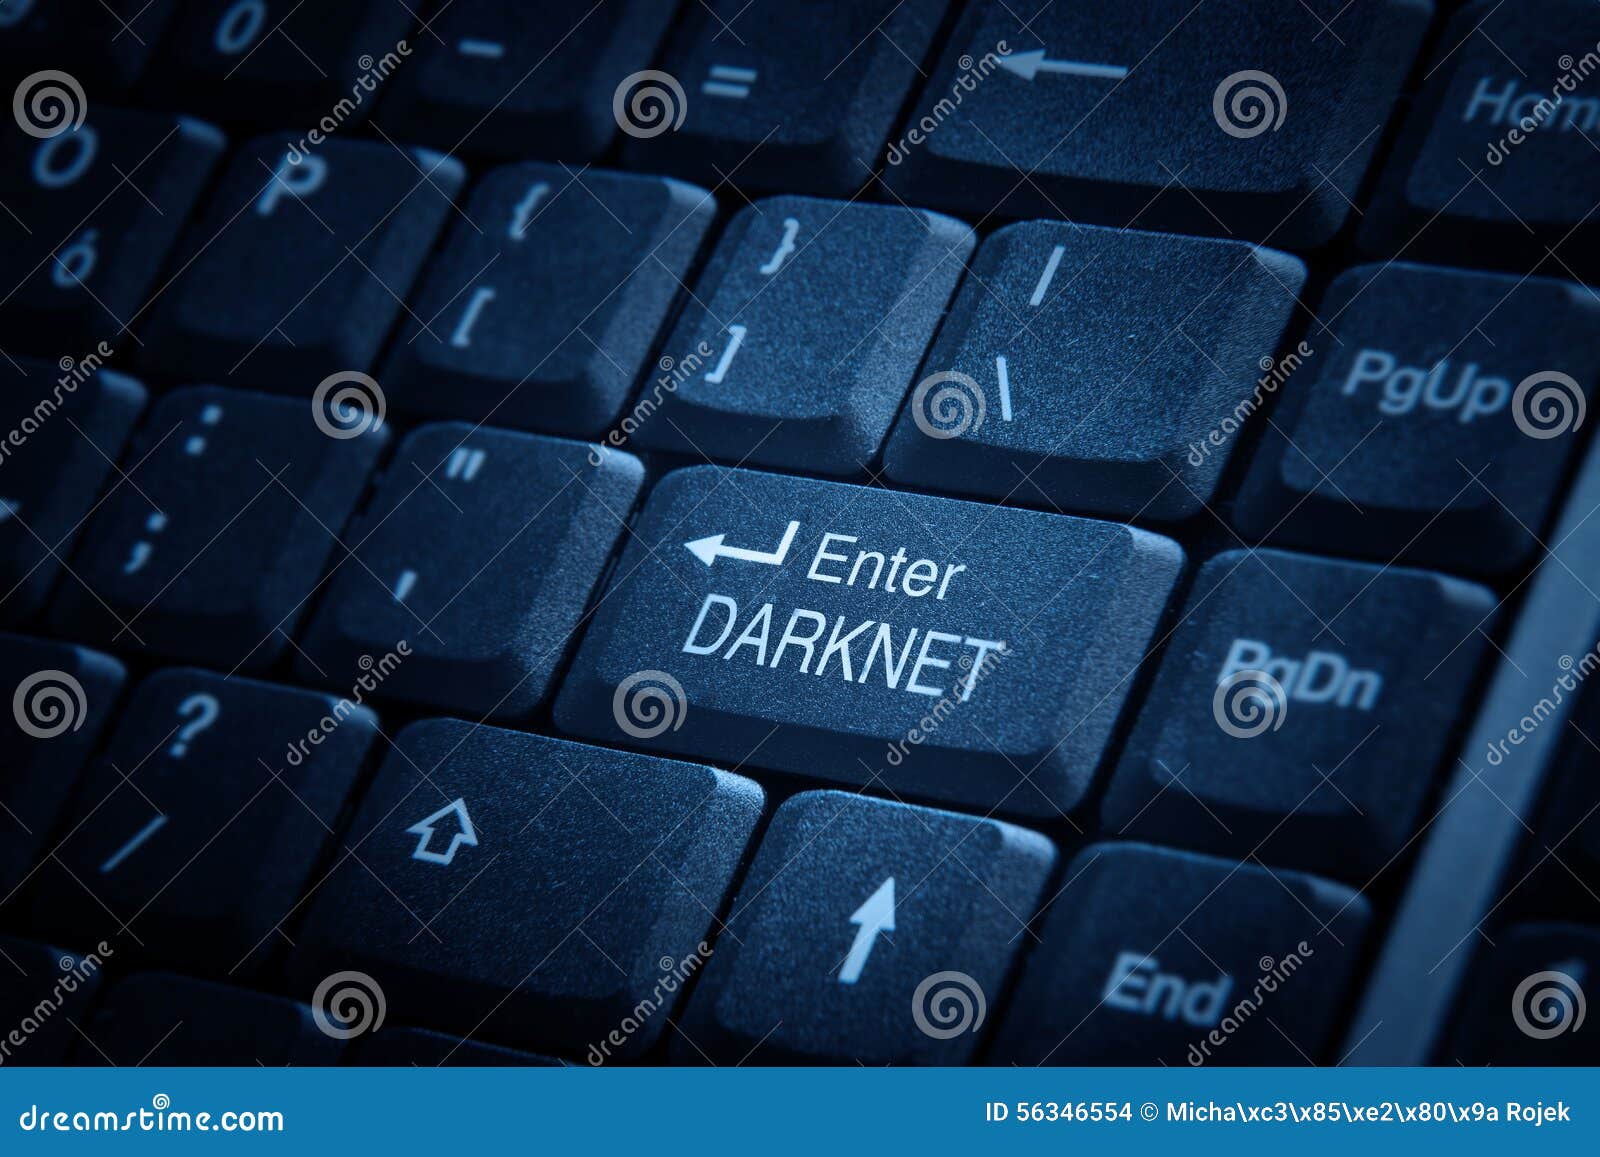 Enter darknet gydra tor browser icon hydraruzxpnew4af